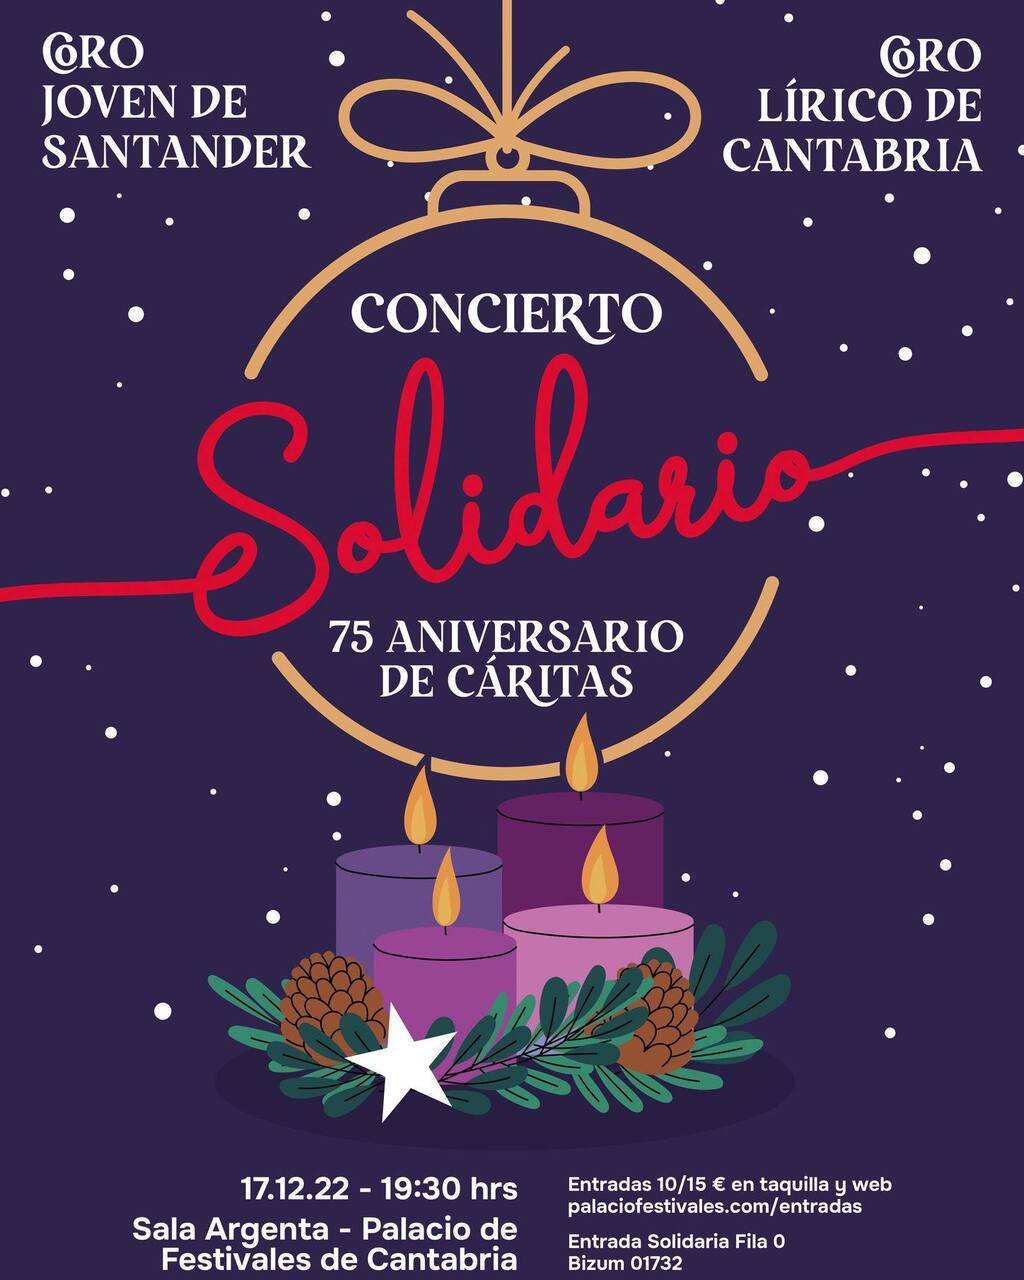 El Coro Lírico de Cantabria y el Coro Joven de Santander se unen para celebrar el 75 aniversario de Cáritas